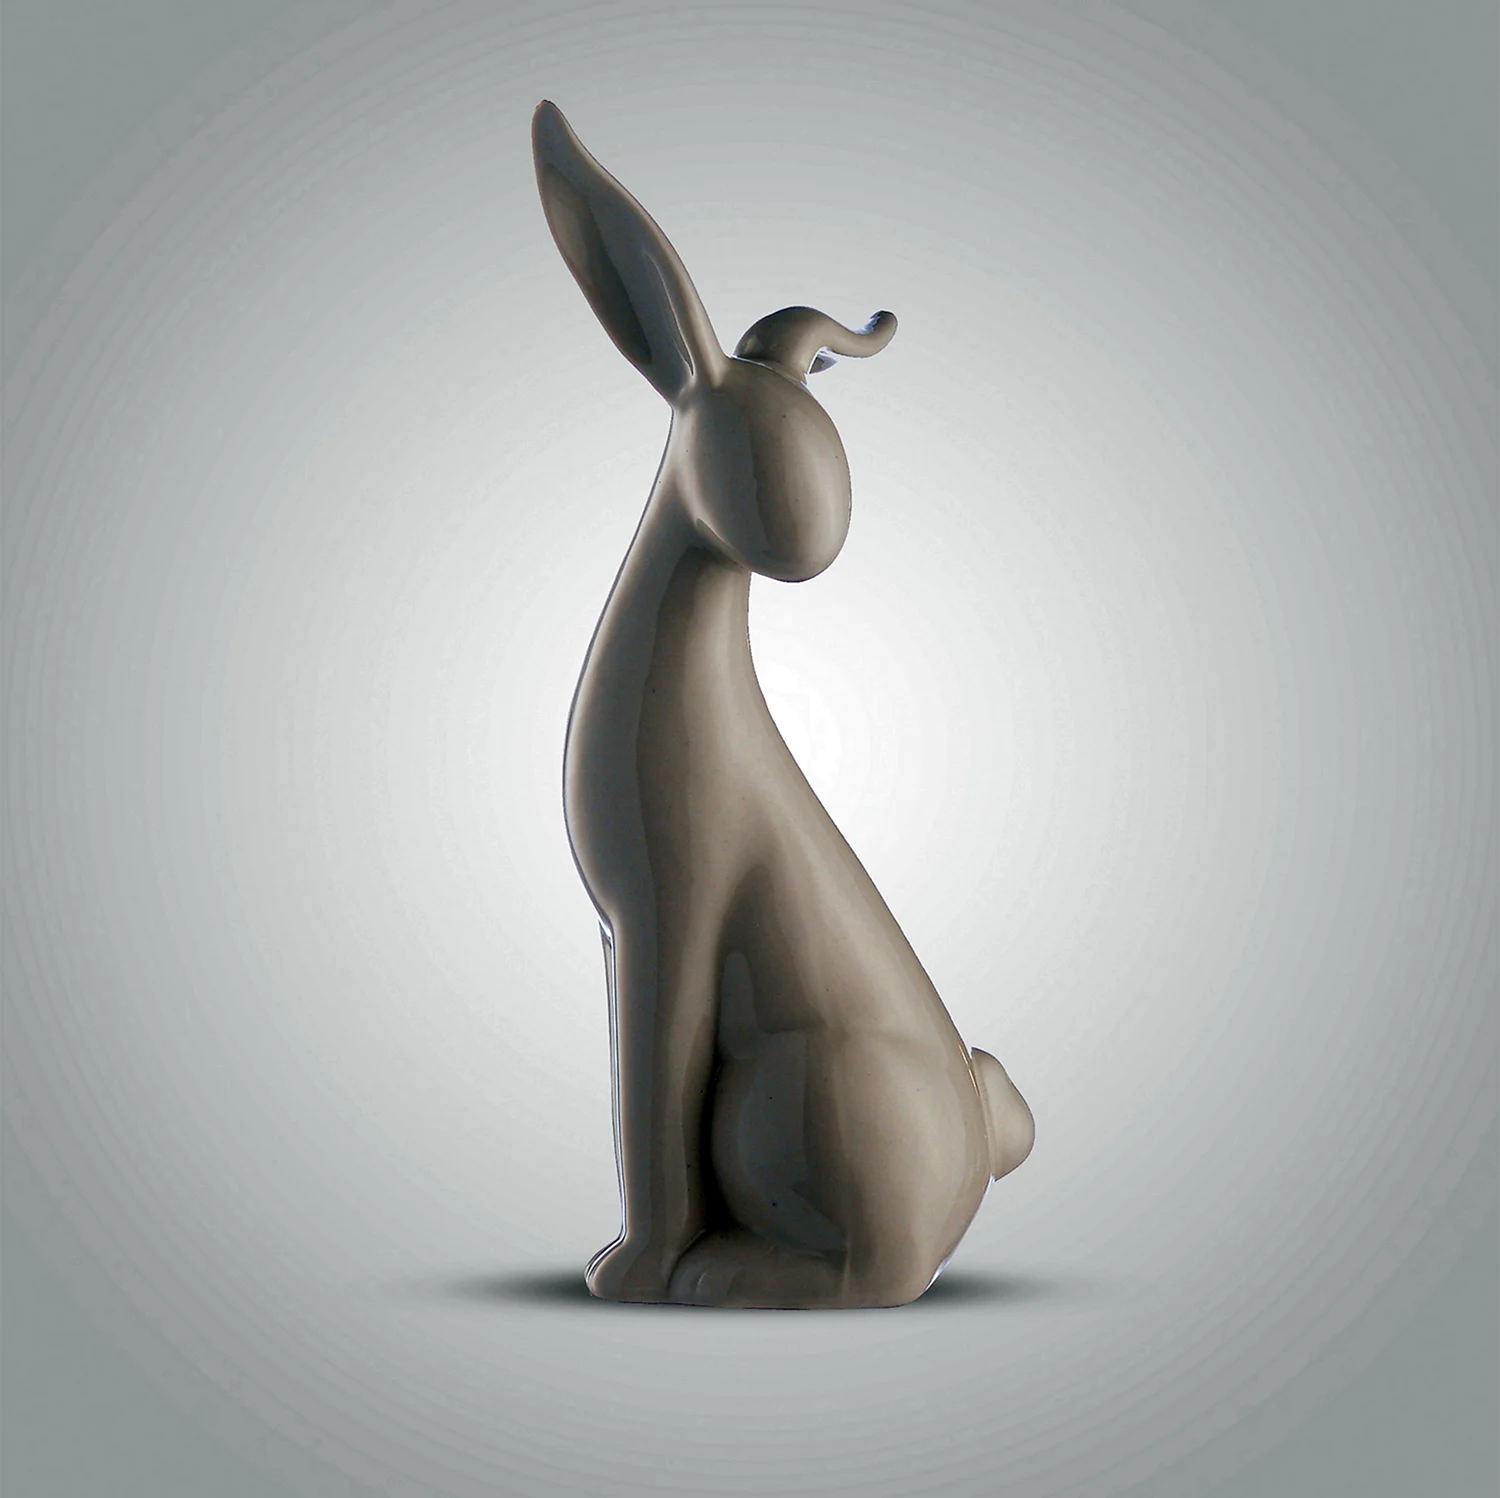 Керамический кролик